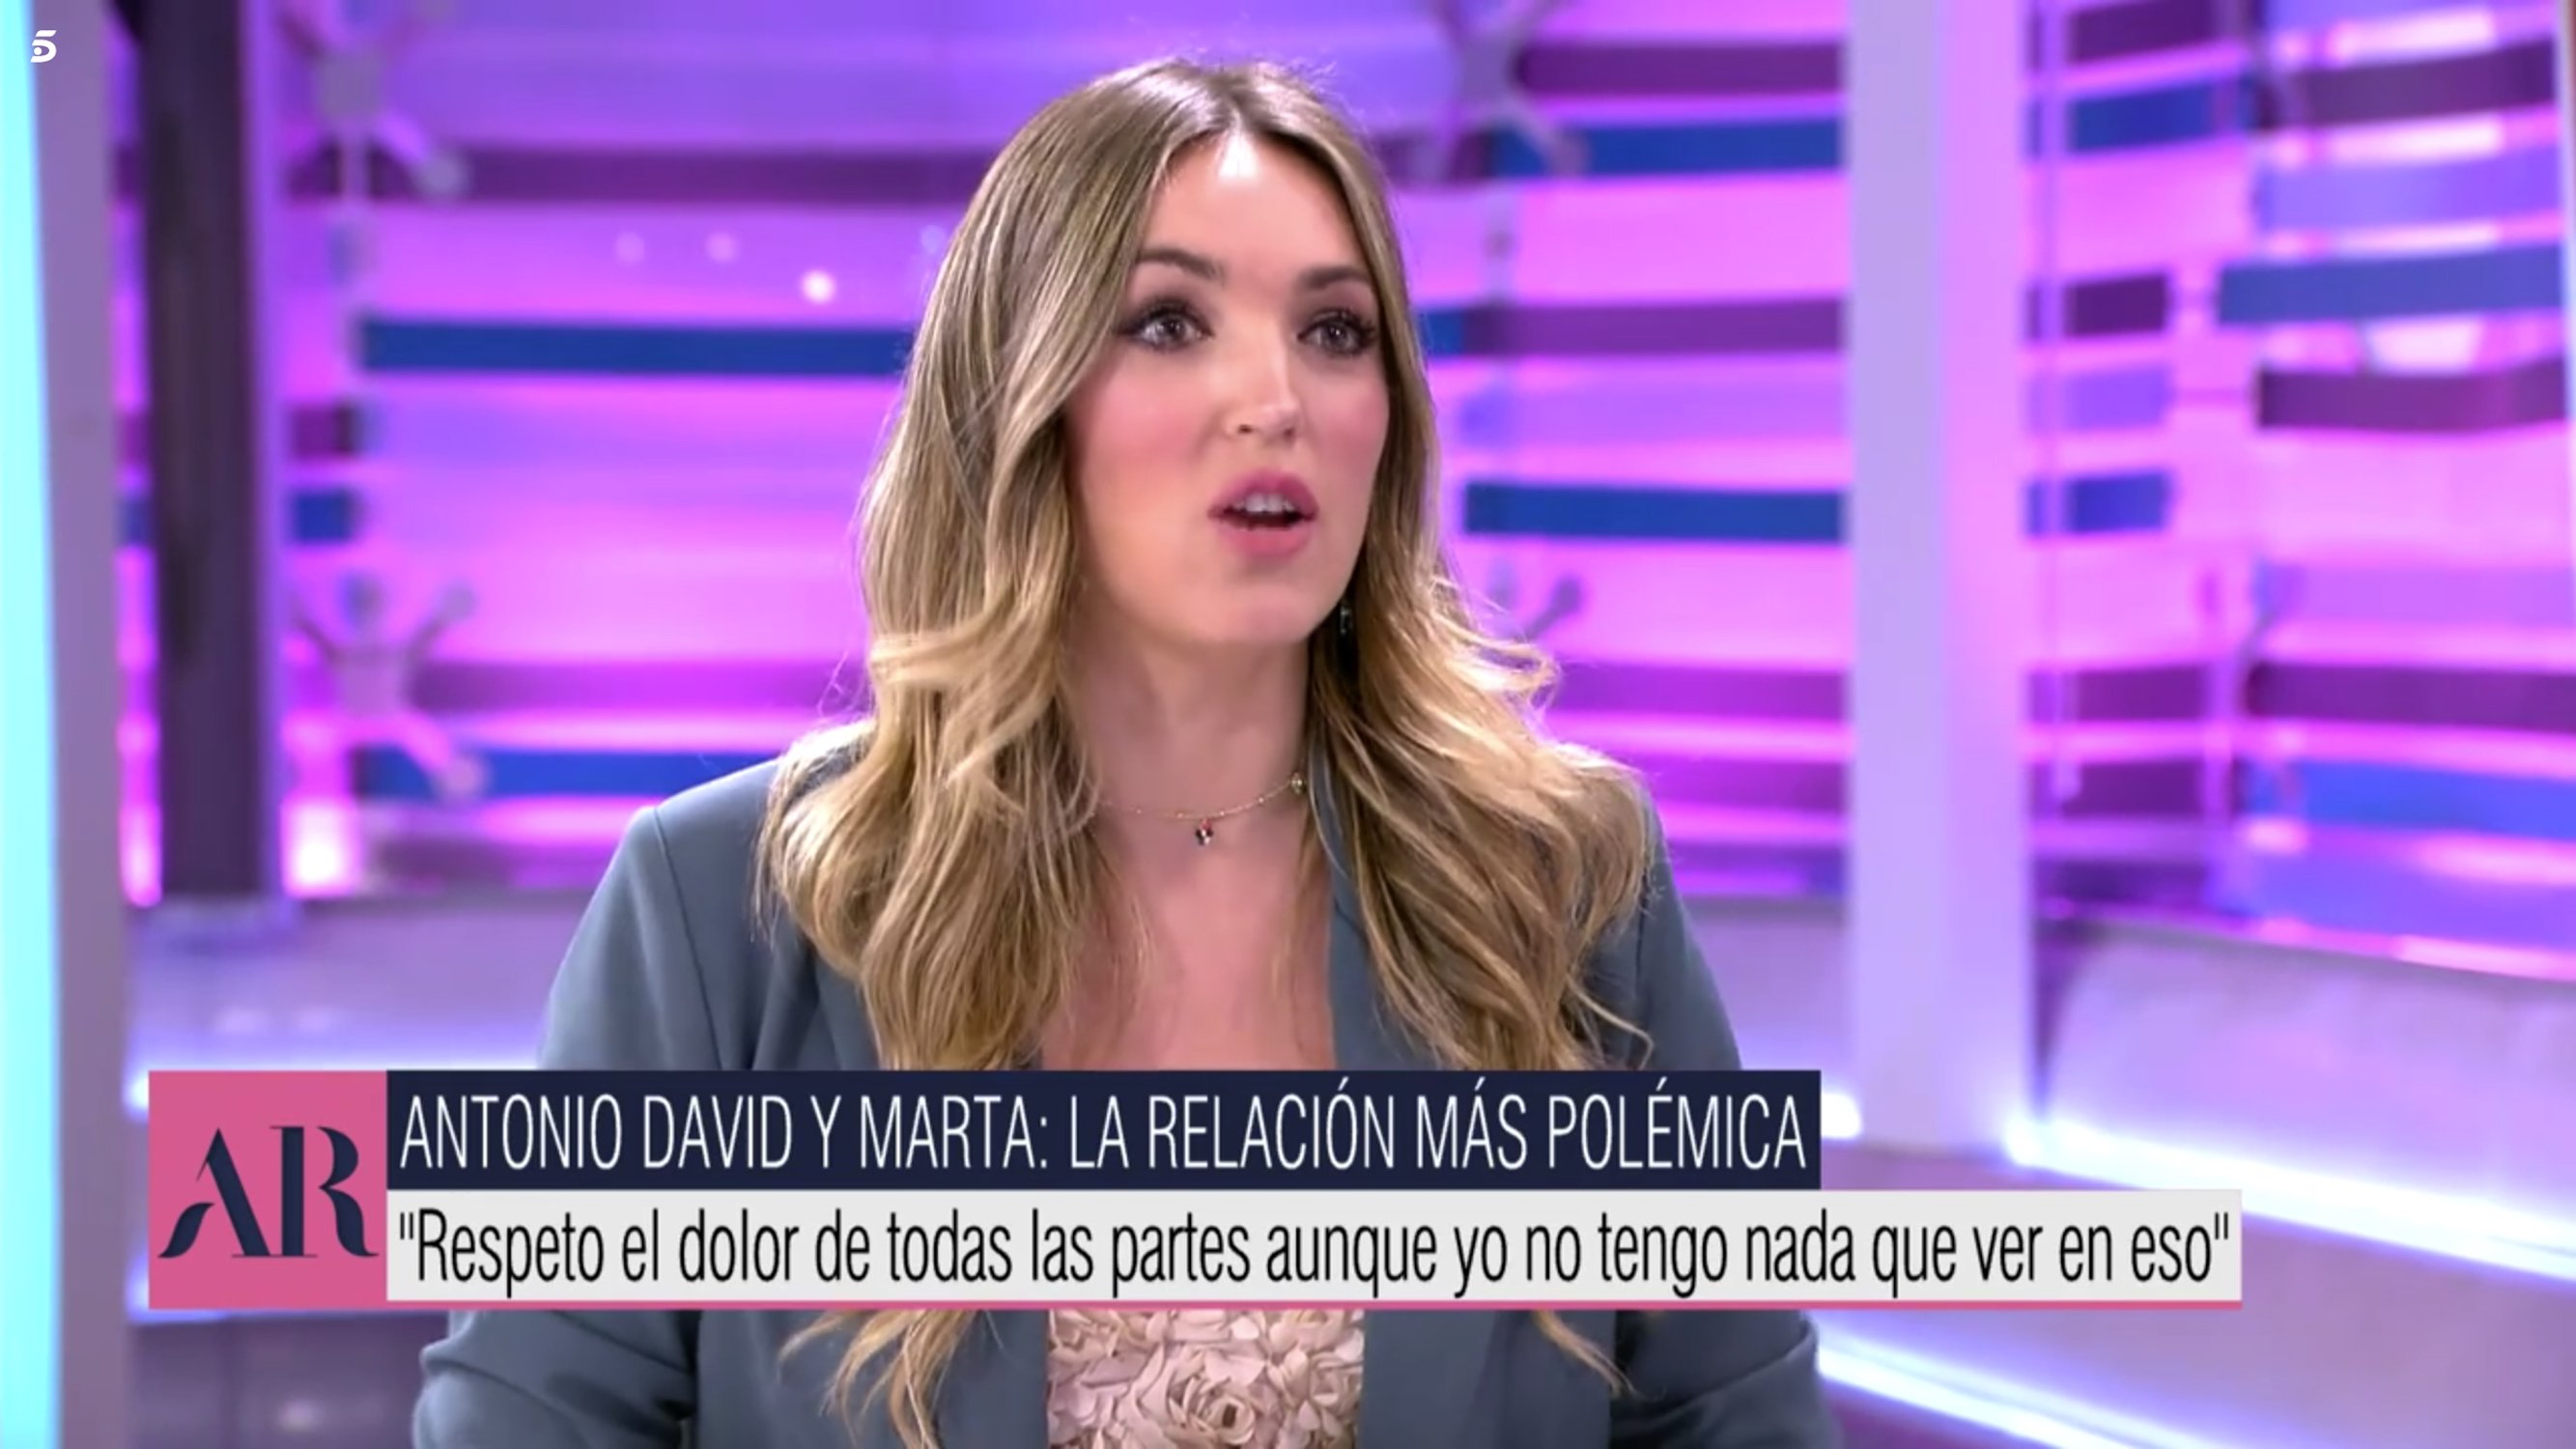 Sopapo a Marta Riesco, novia de Antonio David: esto dice de ella su propio programa